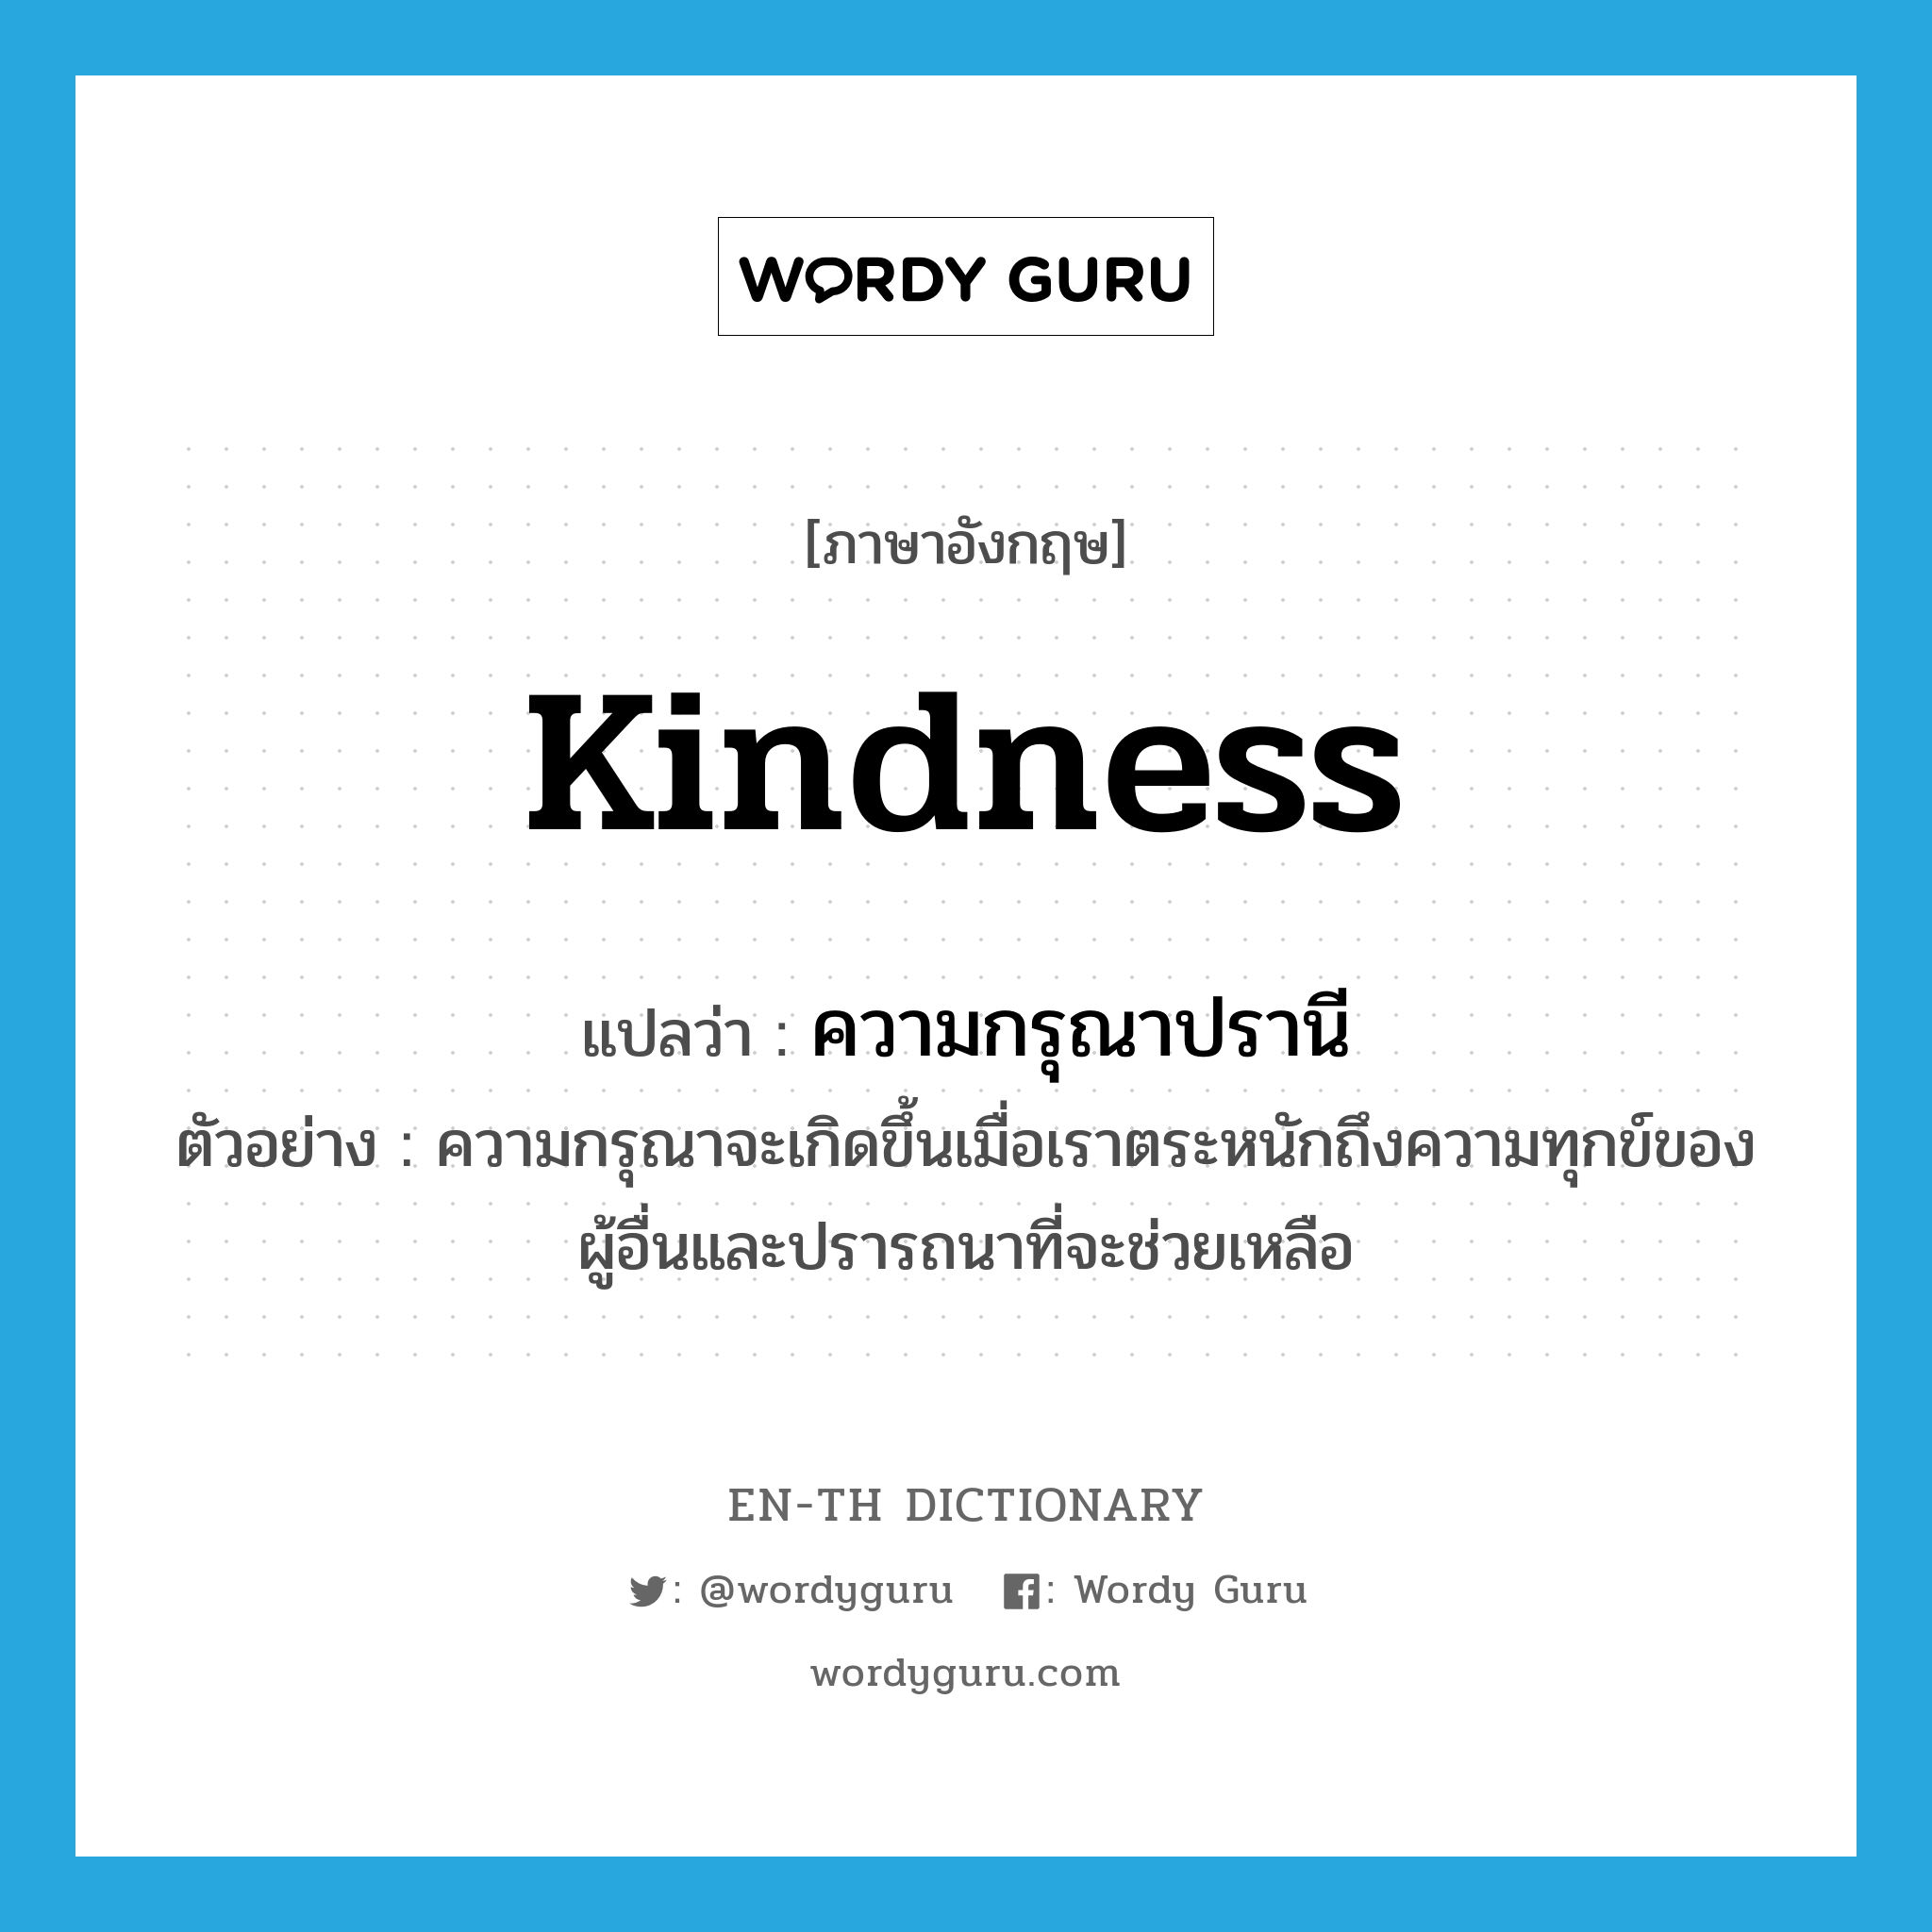 kindness แปลว่า?, คำศัพท์ภาษาอังกฤษ kindness แปลว่า ความกรุณาปรานี ประเภท N ตัวอย่าง ความกรุณาจะเกิดขึ้นเมื่อเราตระหนักถึงความทุกข์ของผู้อื่นและปรารถนาที่จะช่วยเหลือ หมวด N